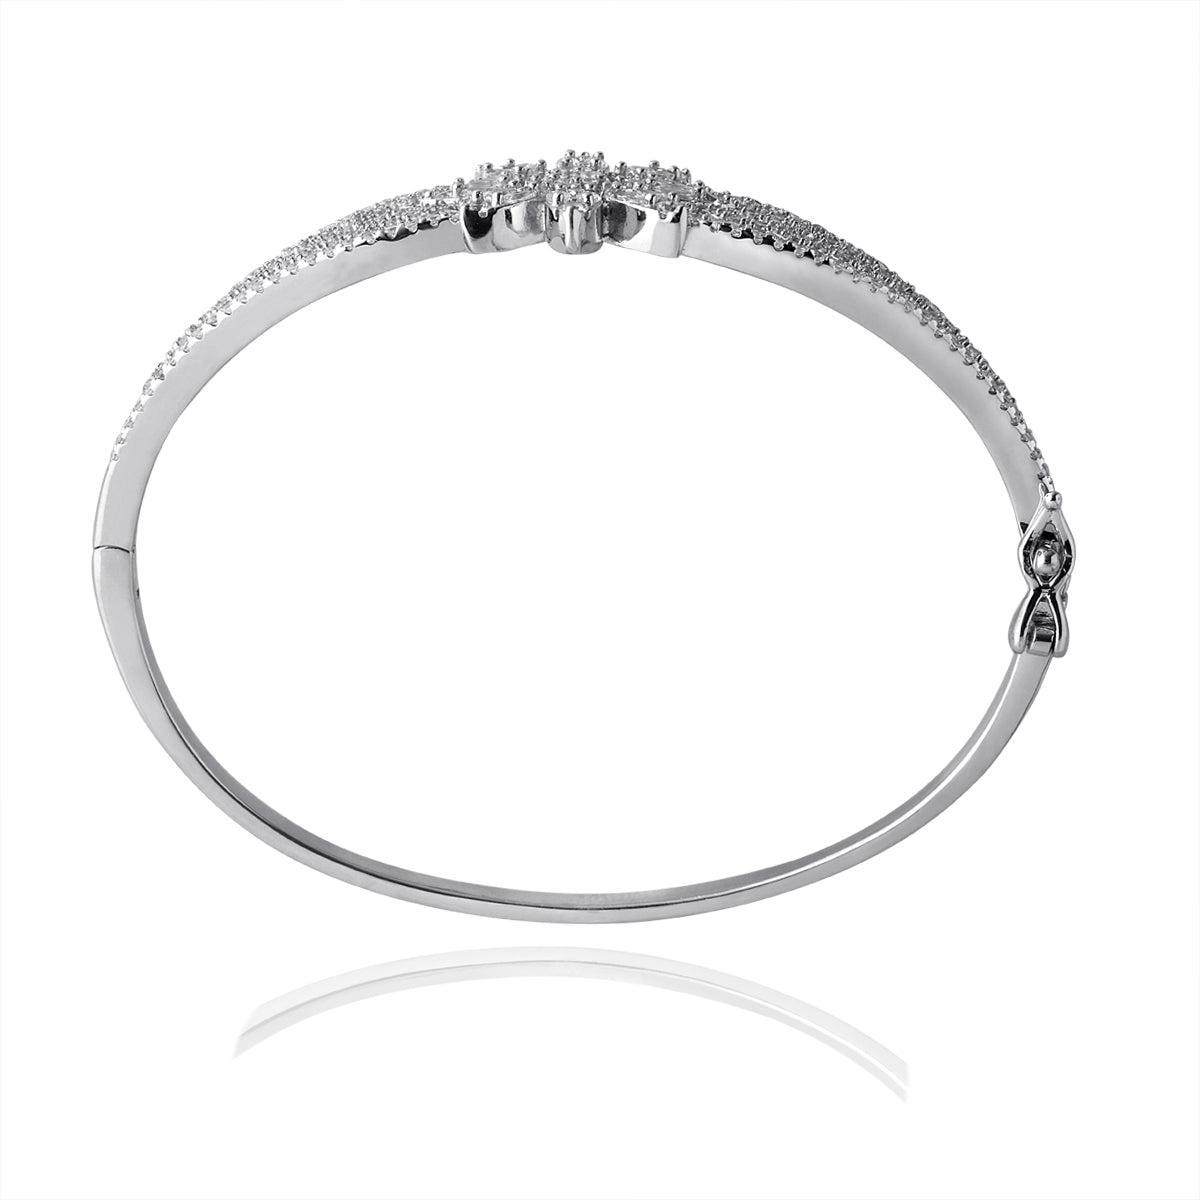 Buy or send Meenakari Work Stylish 70% Pure Silver Bracelet Rakhi - 8.8  Grams Online